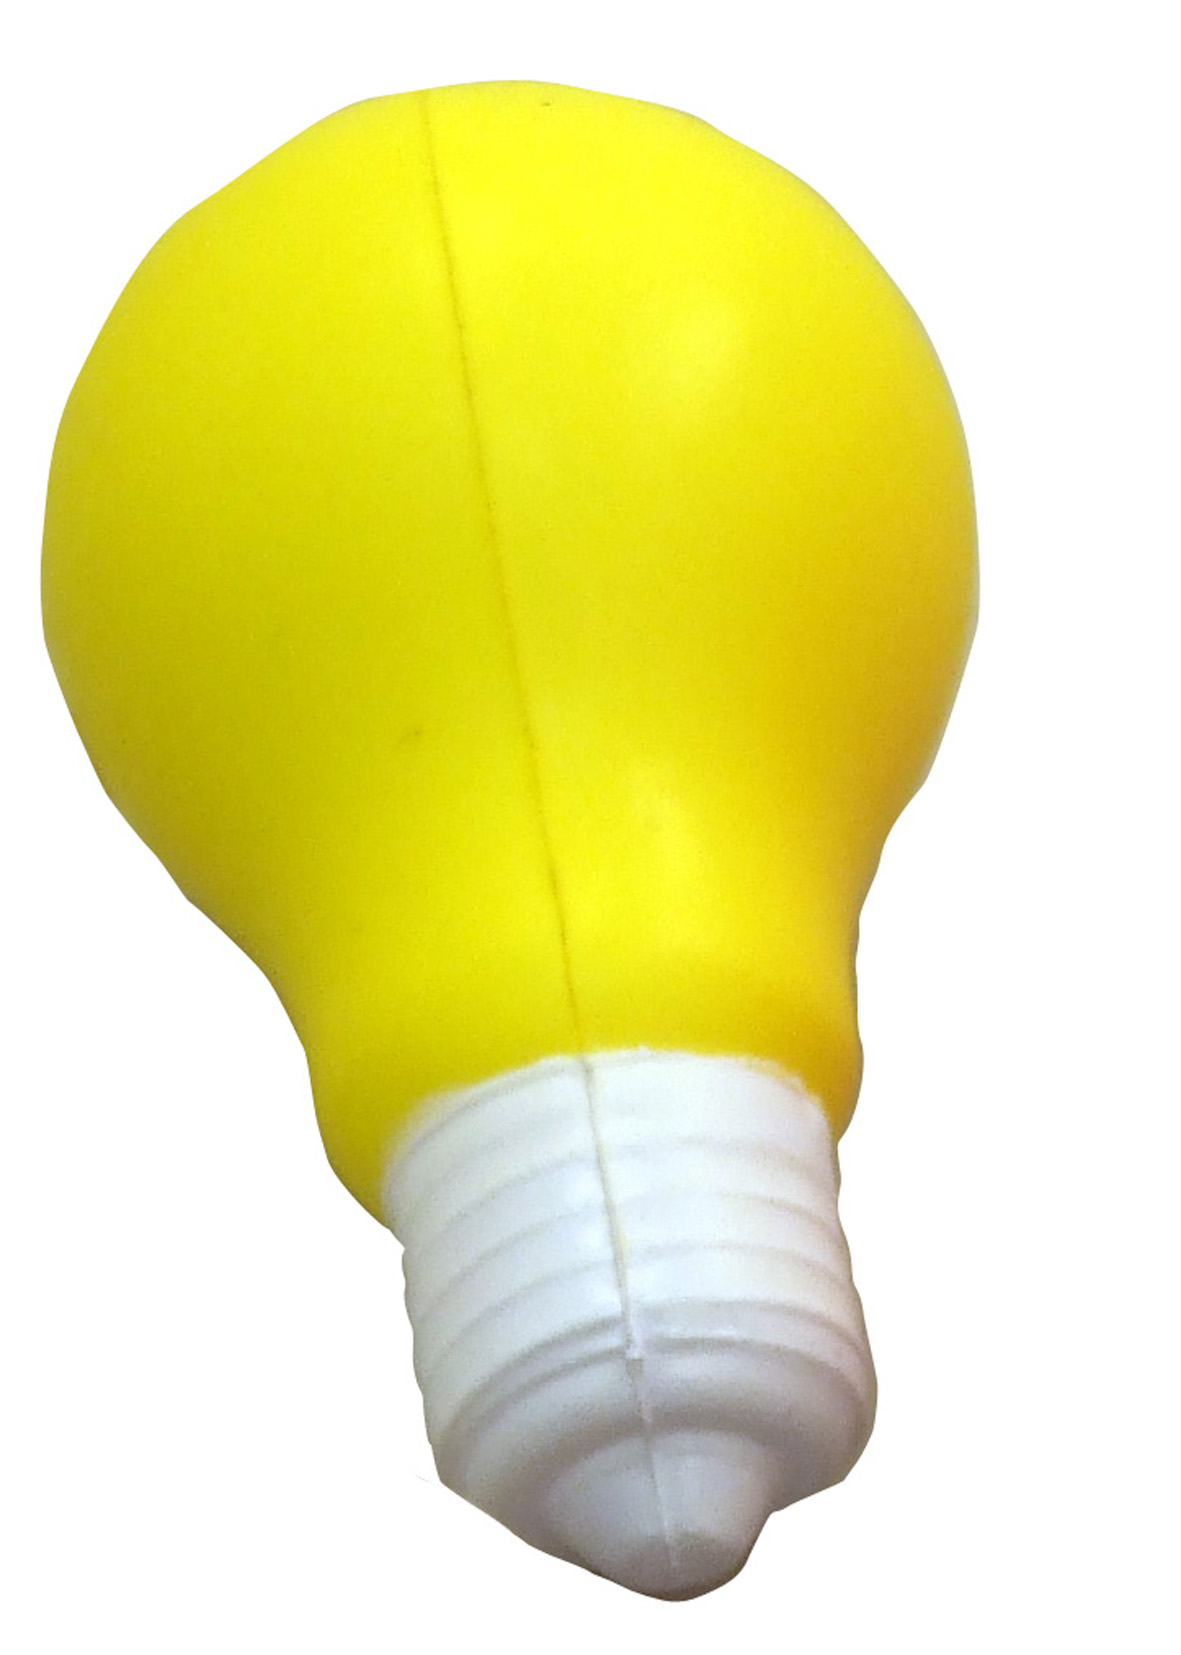 Light Bulb Stress ball (10.5X6Cm)